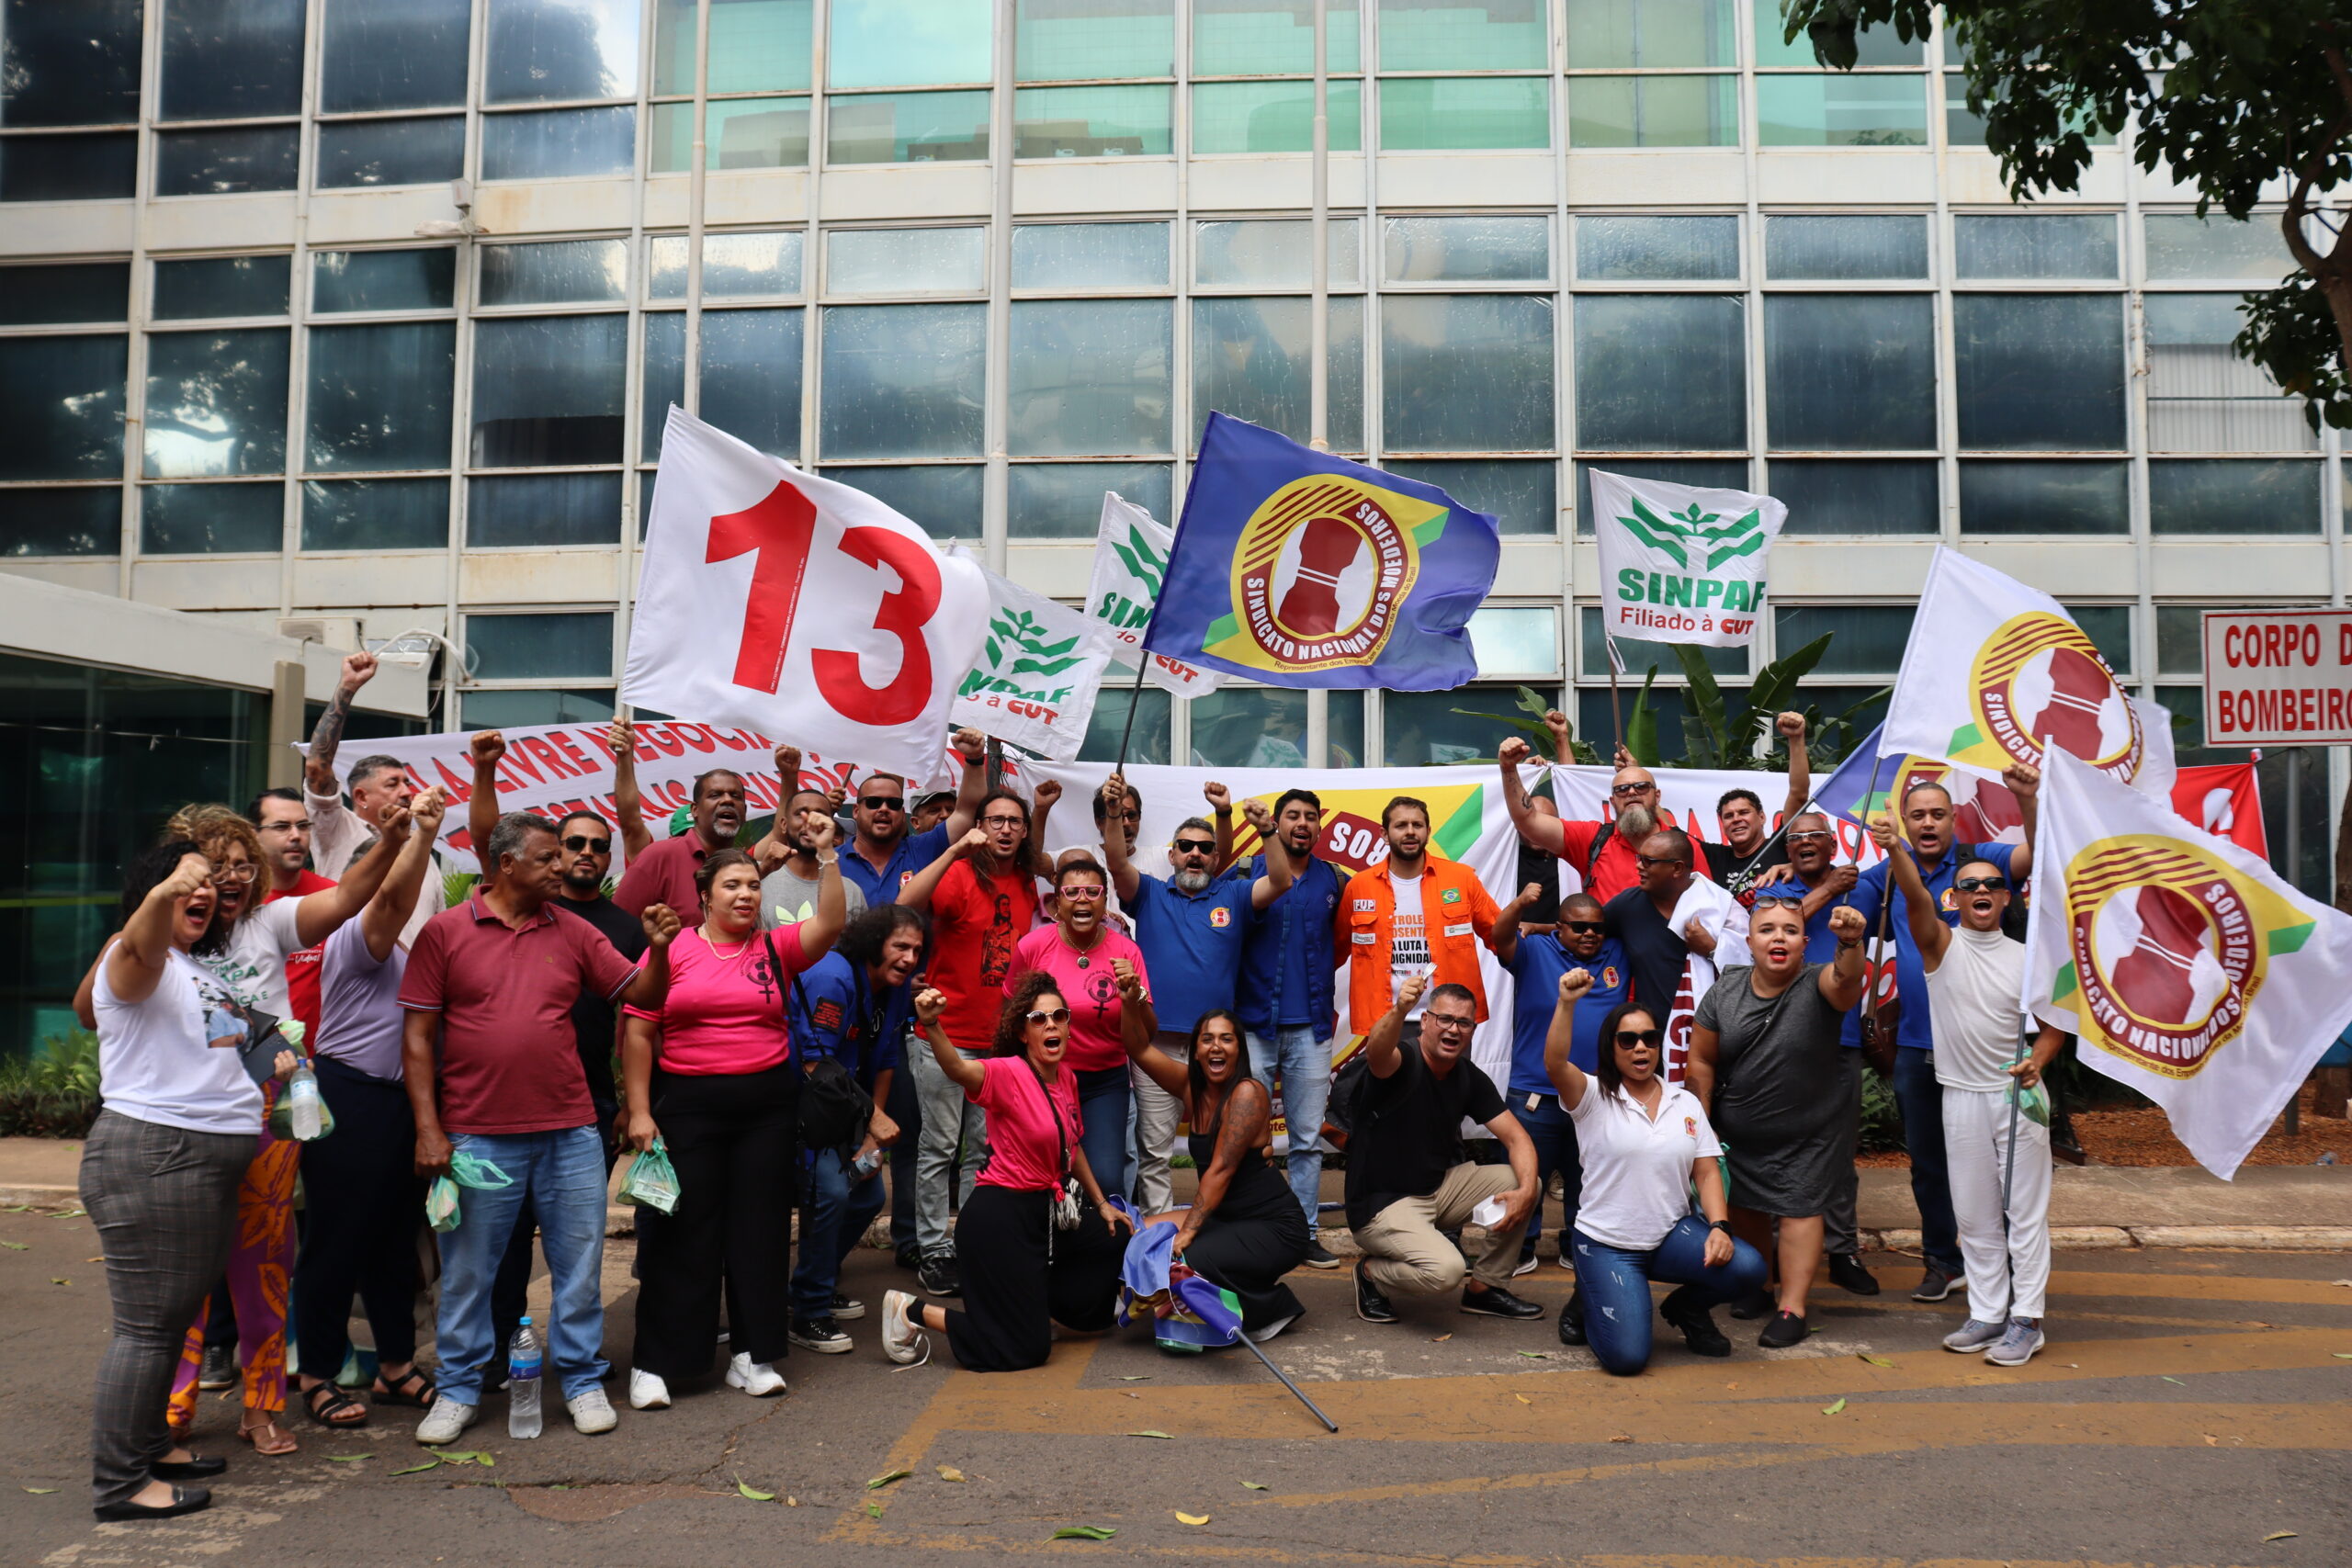 Vitória dos Trabalhadores: Governo Recua Diante da Pressão e Abre Diálogo sobre CGPAR42